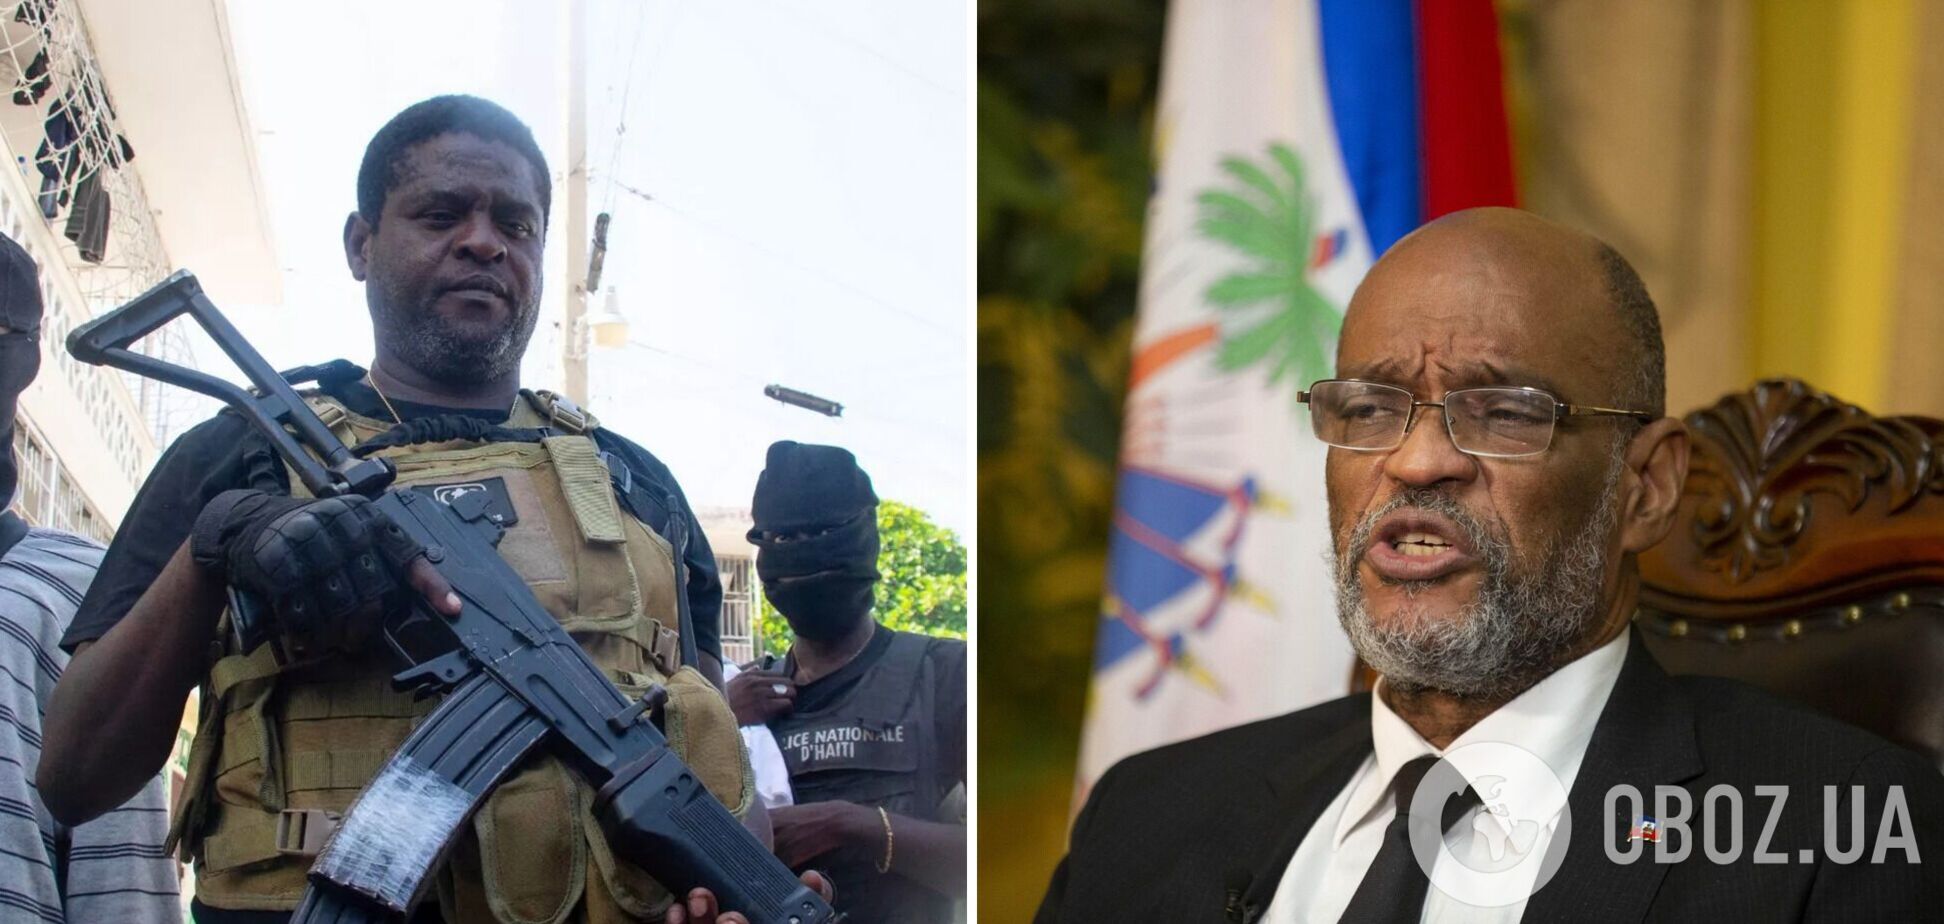 Лідер бандитів Гаїті пригрозив 'громадянською війною', якщо прем'єр не піде у відставку
